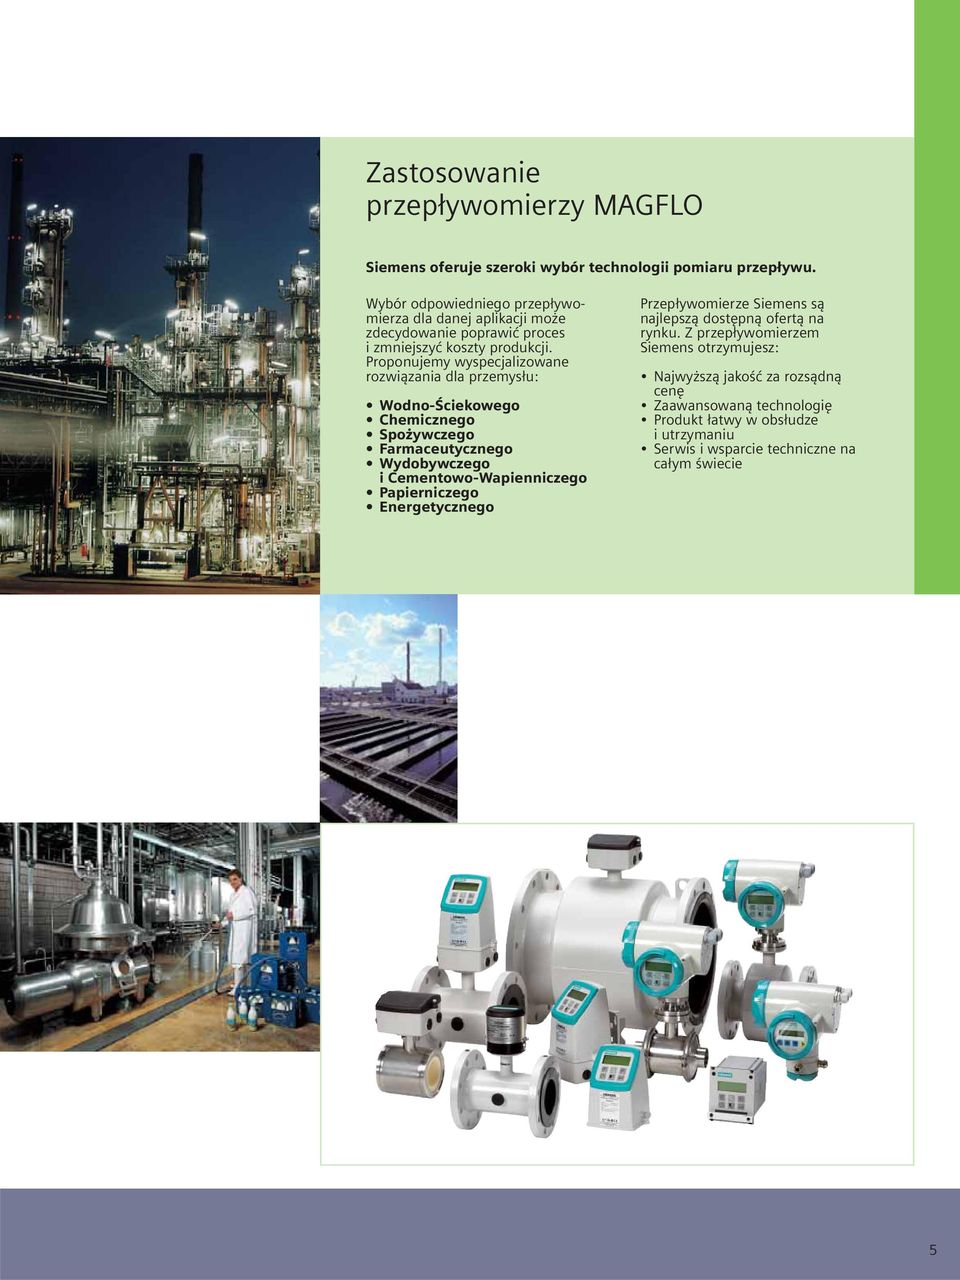 Proponujemy wyspecjalizowane rozwiązania dla przemysłu: Wodno-Ściekowego Chemicznego Spożywczego Farmaceutycznego Wydobywczego i Cementowo-Wapienniczego